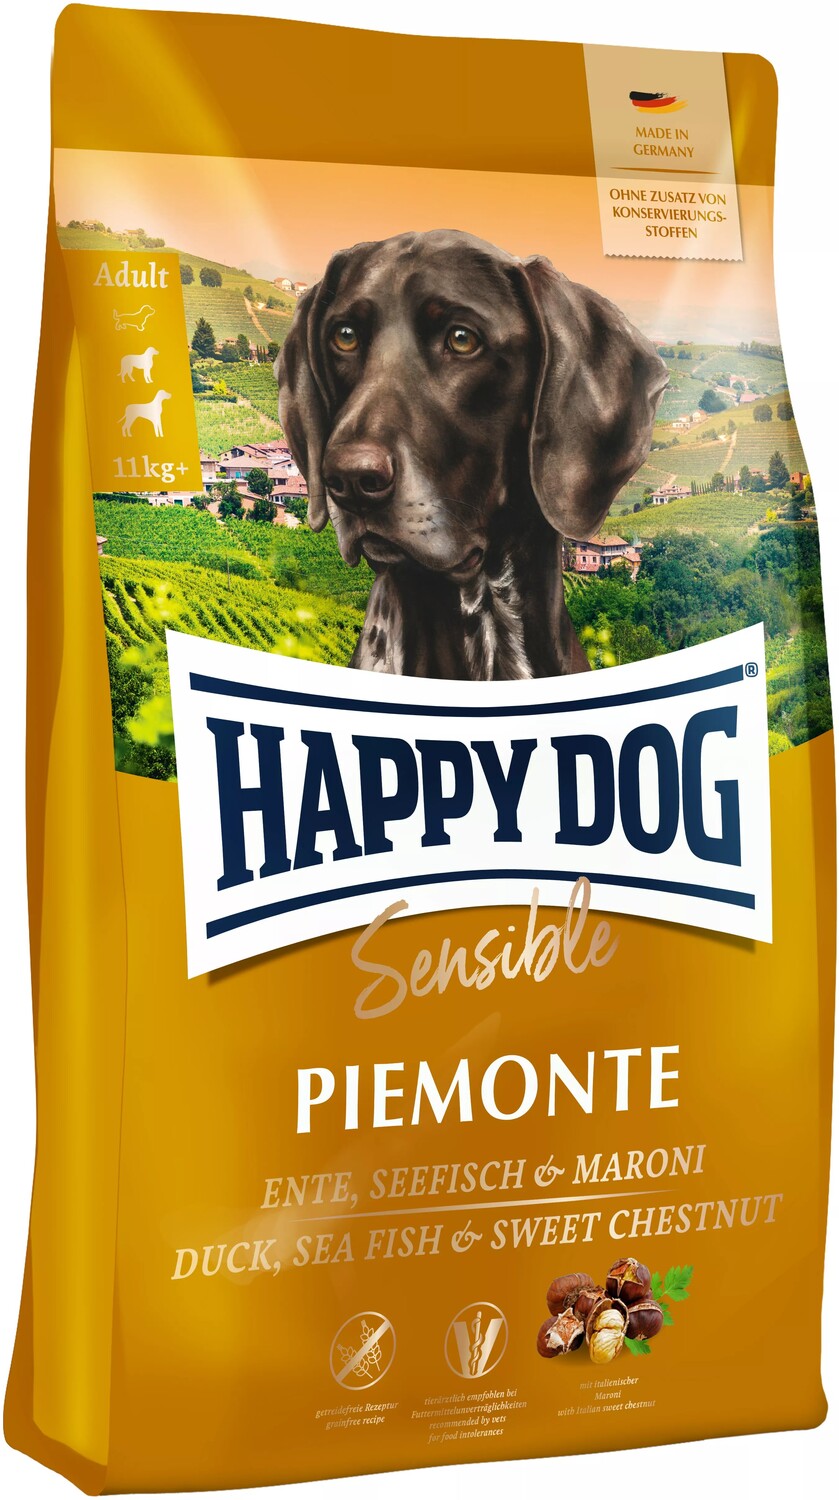 Happy Dog Supreme Sensible Piemonte hrană pentru câini, fără cereale